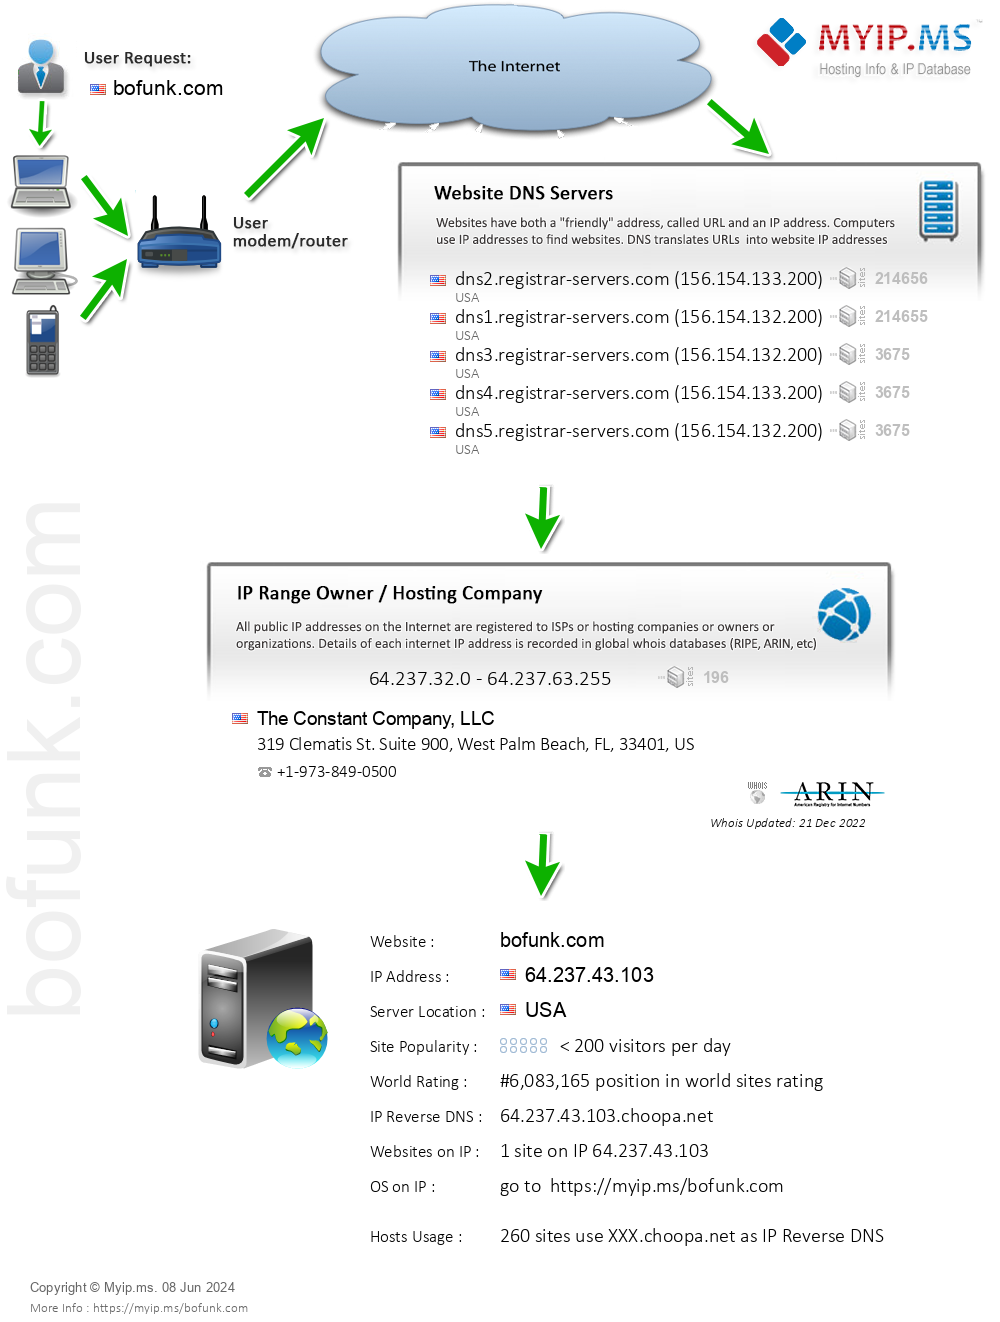 Bofunk.com - Website Hosting Visual IP Diagram